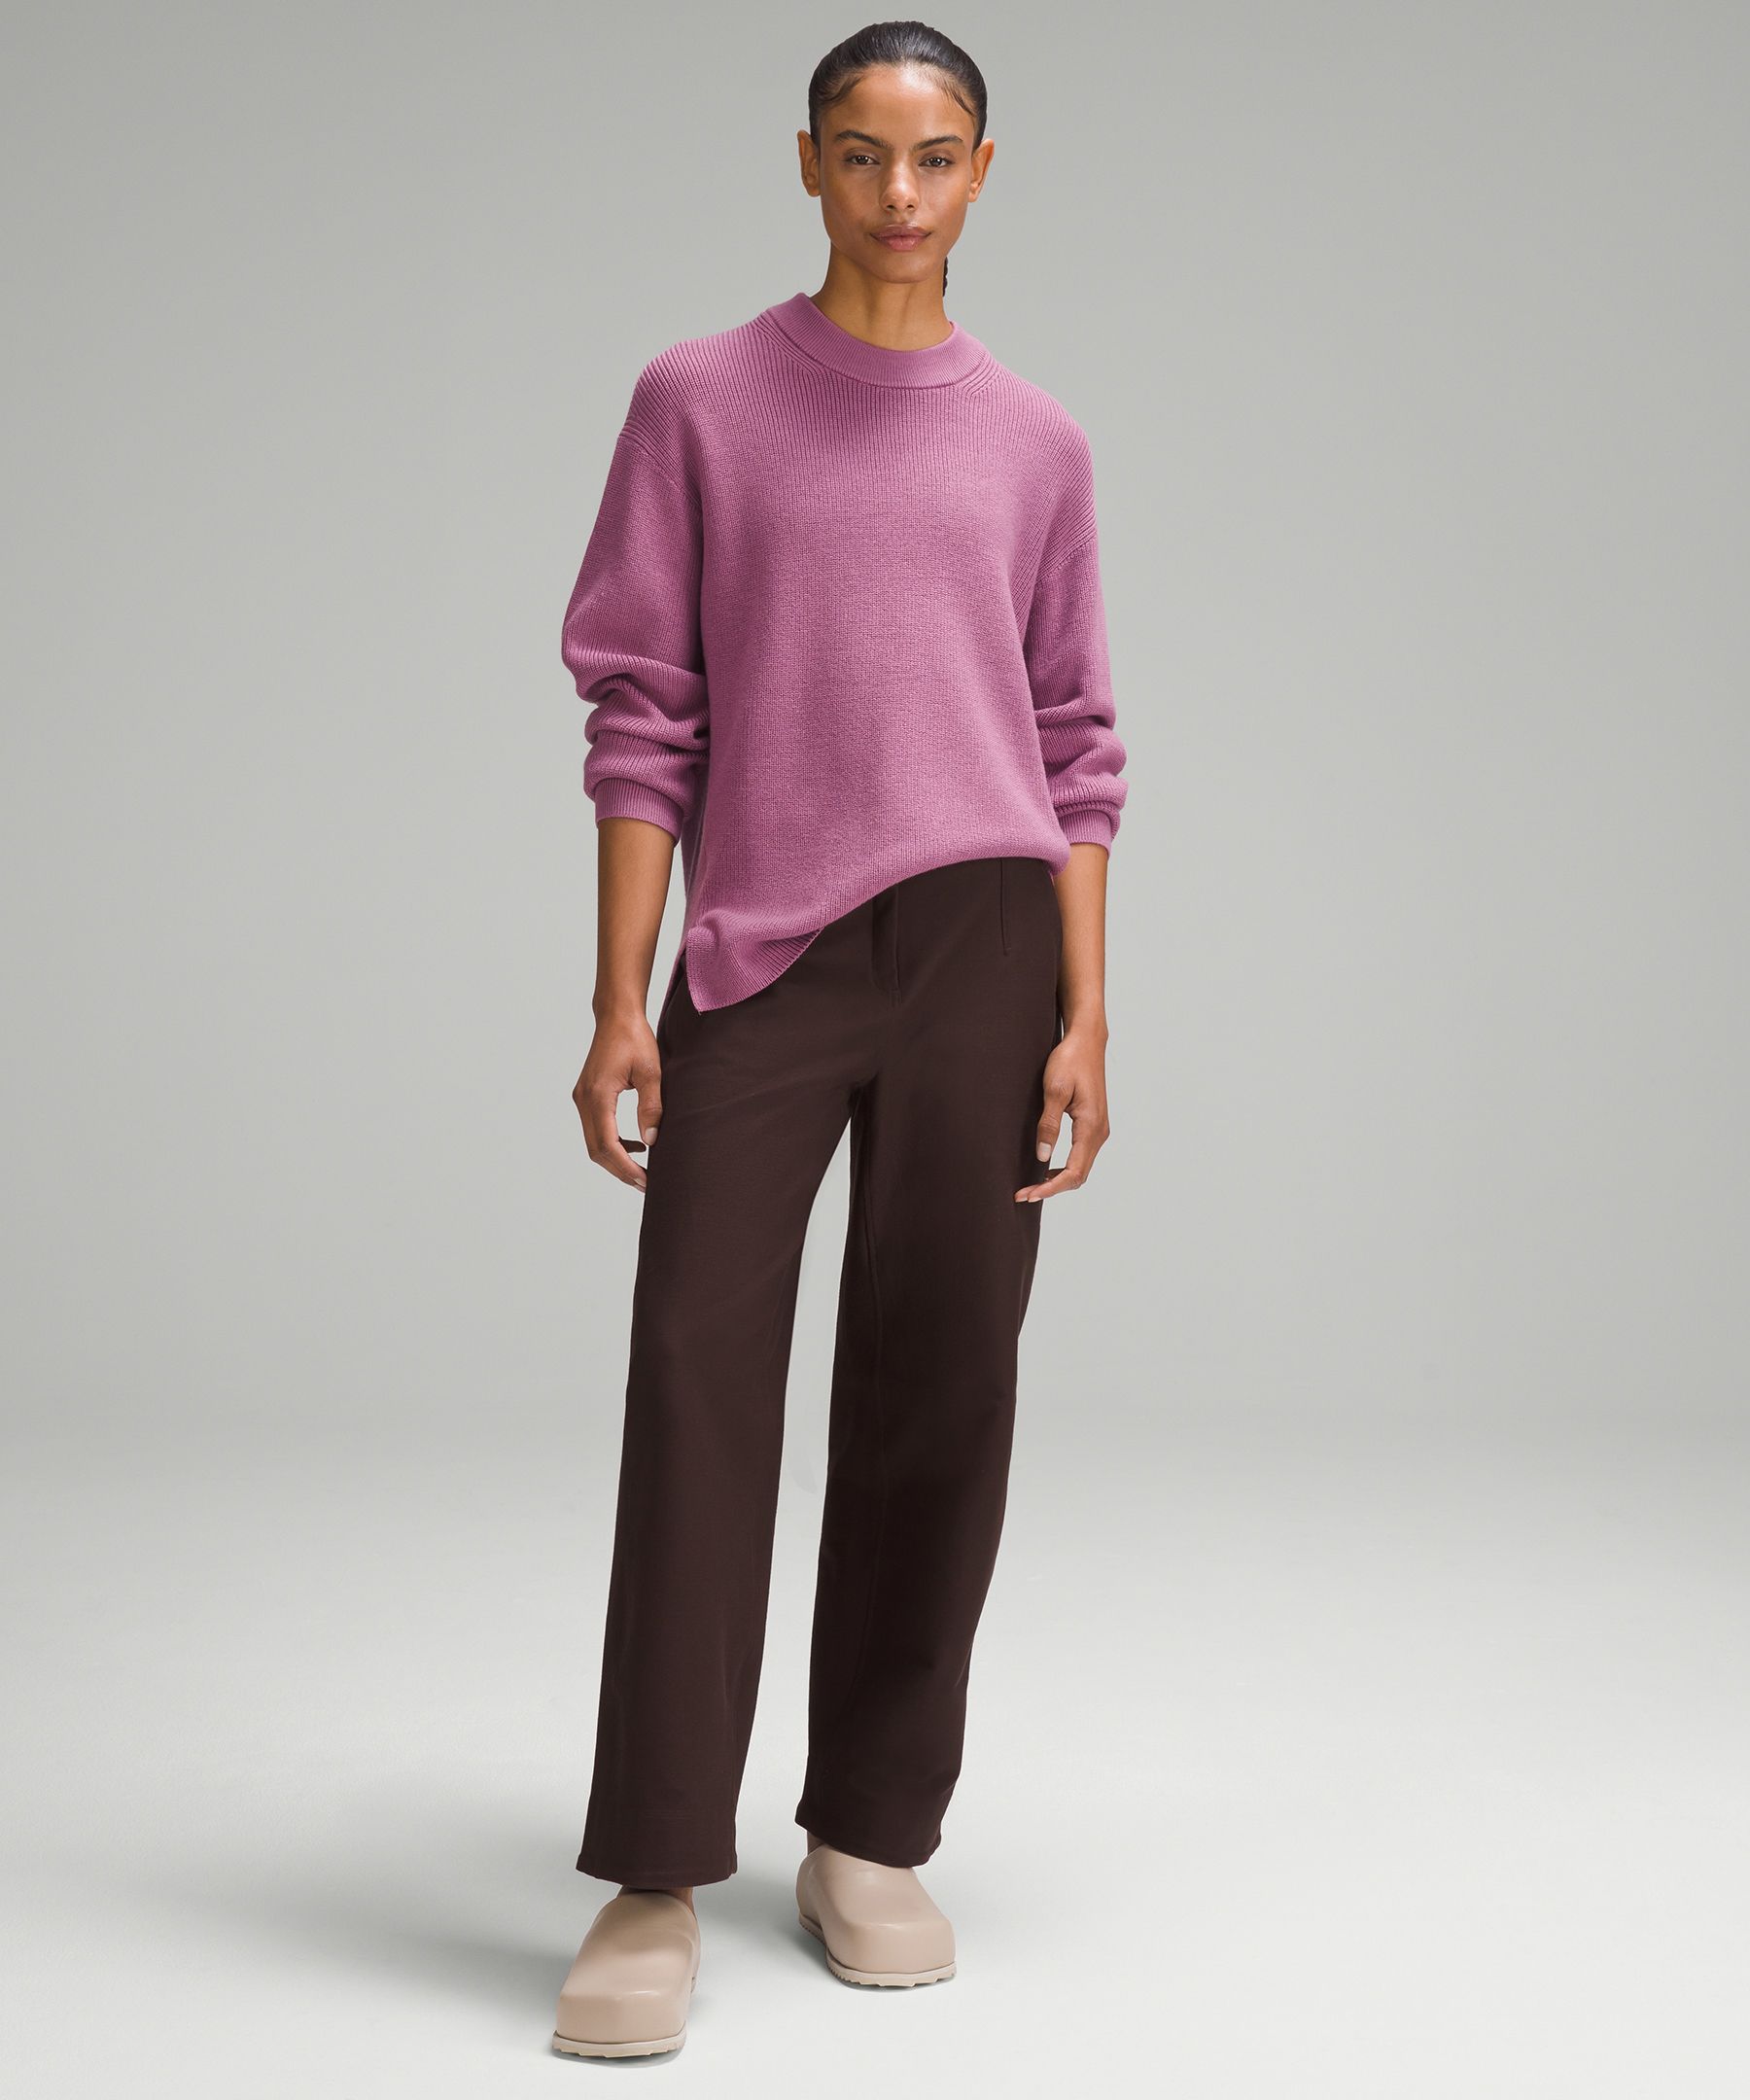 Lululemon Women's Size 8 Gray Solid Sweater - ShopperBoard